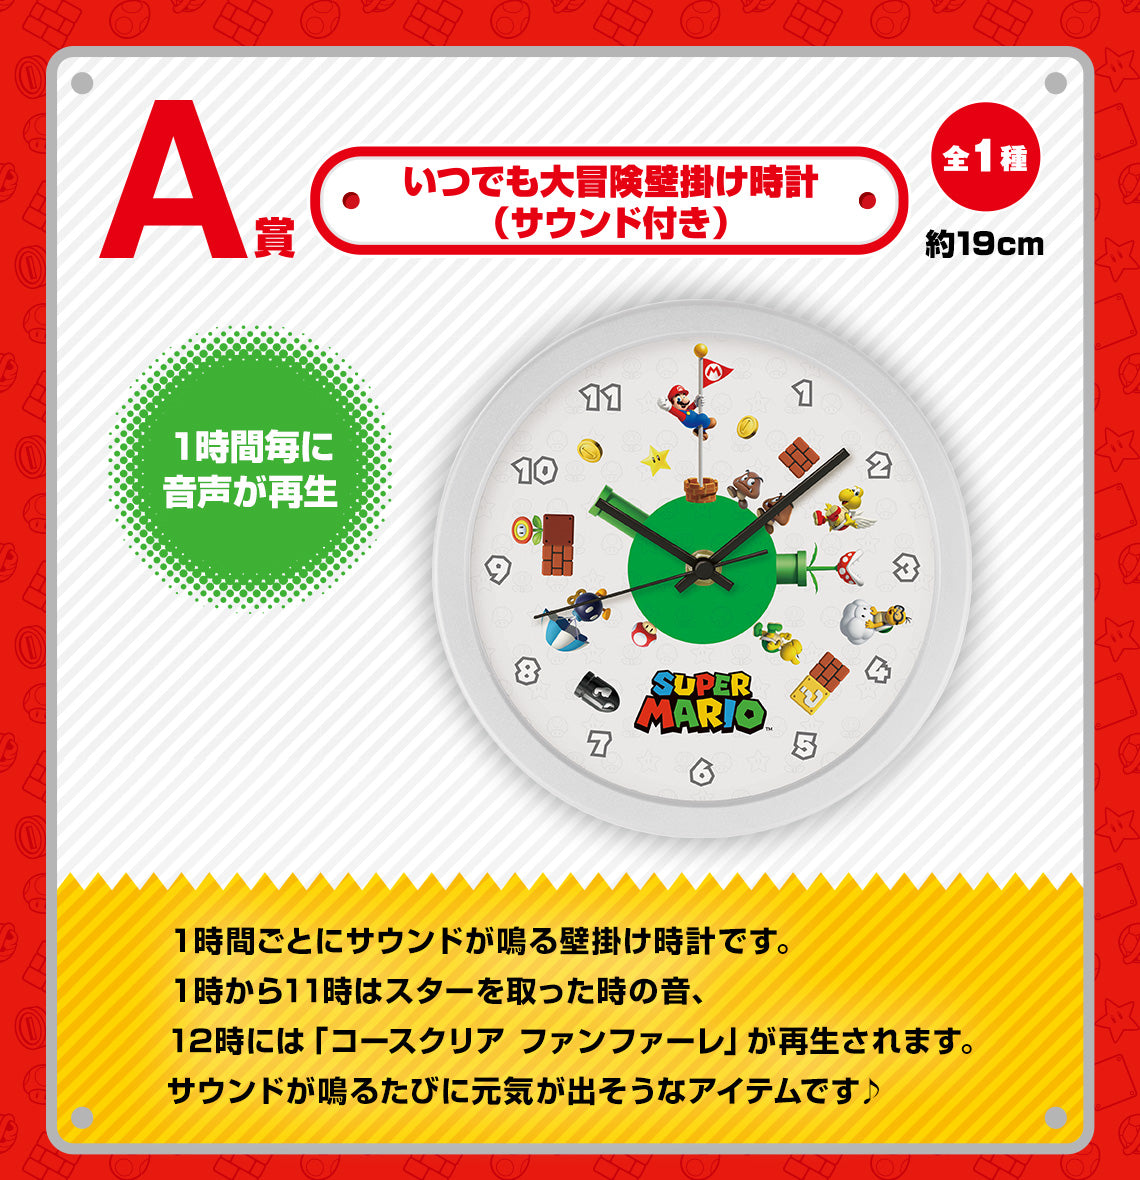 Ichiban Kuji Super Mario Bros. Adventure Life At Home-Bandai-Ace Cards & Collectibles